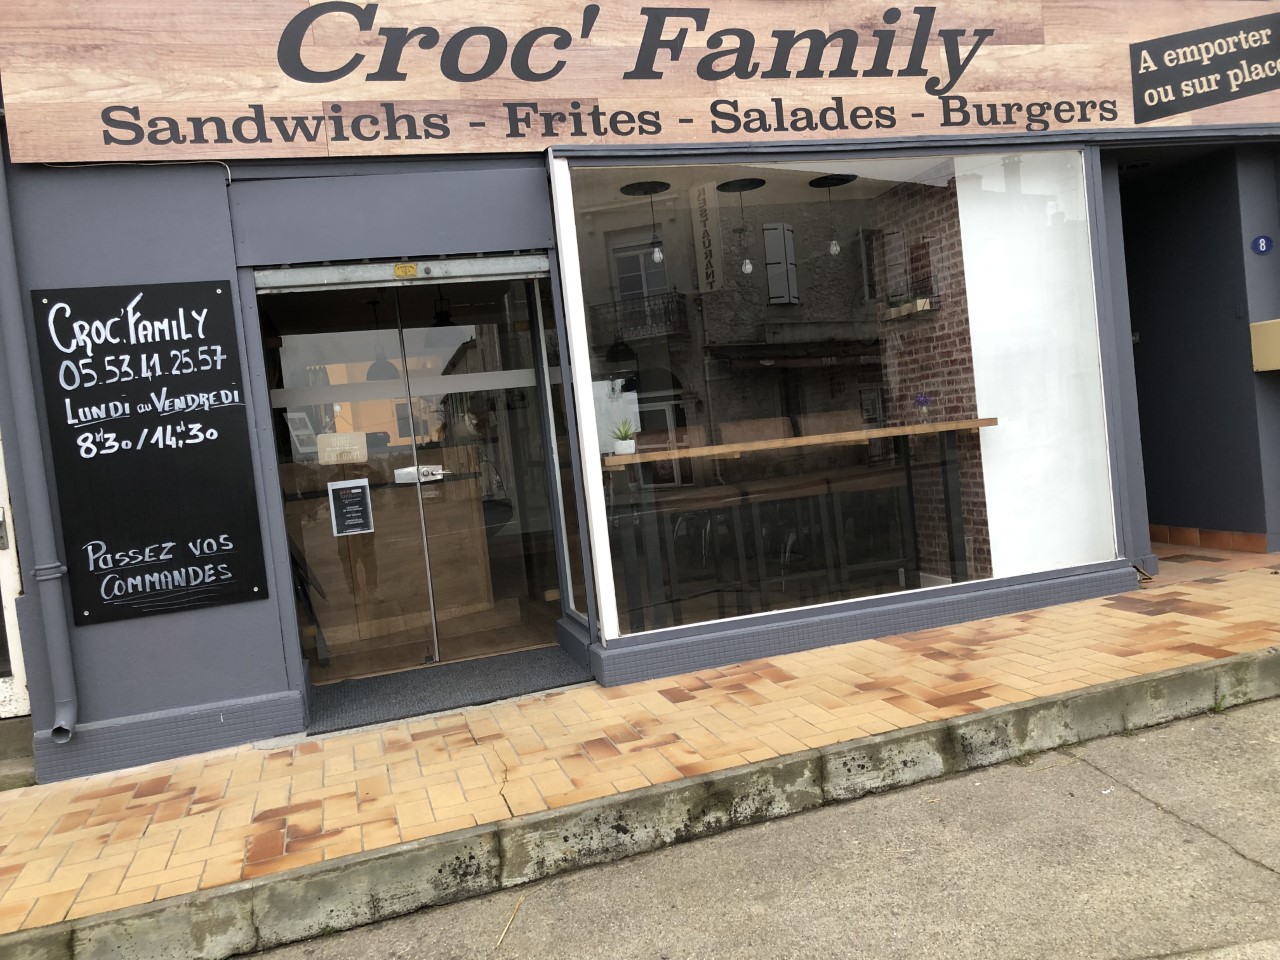 Vends Sandwicherie/Salon de Thé "Croc Family" situé en bord de nationale , en face de la  pharmacie et collé a une épicerie Cocci Market , très bon emplacement.